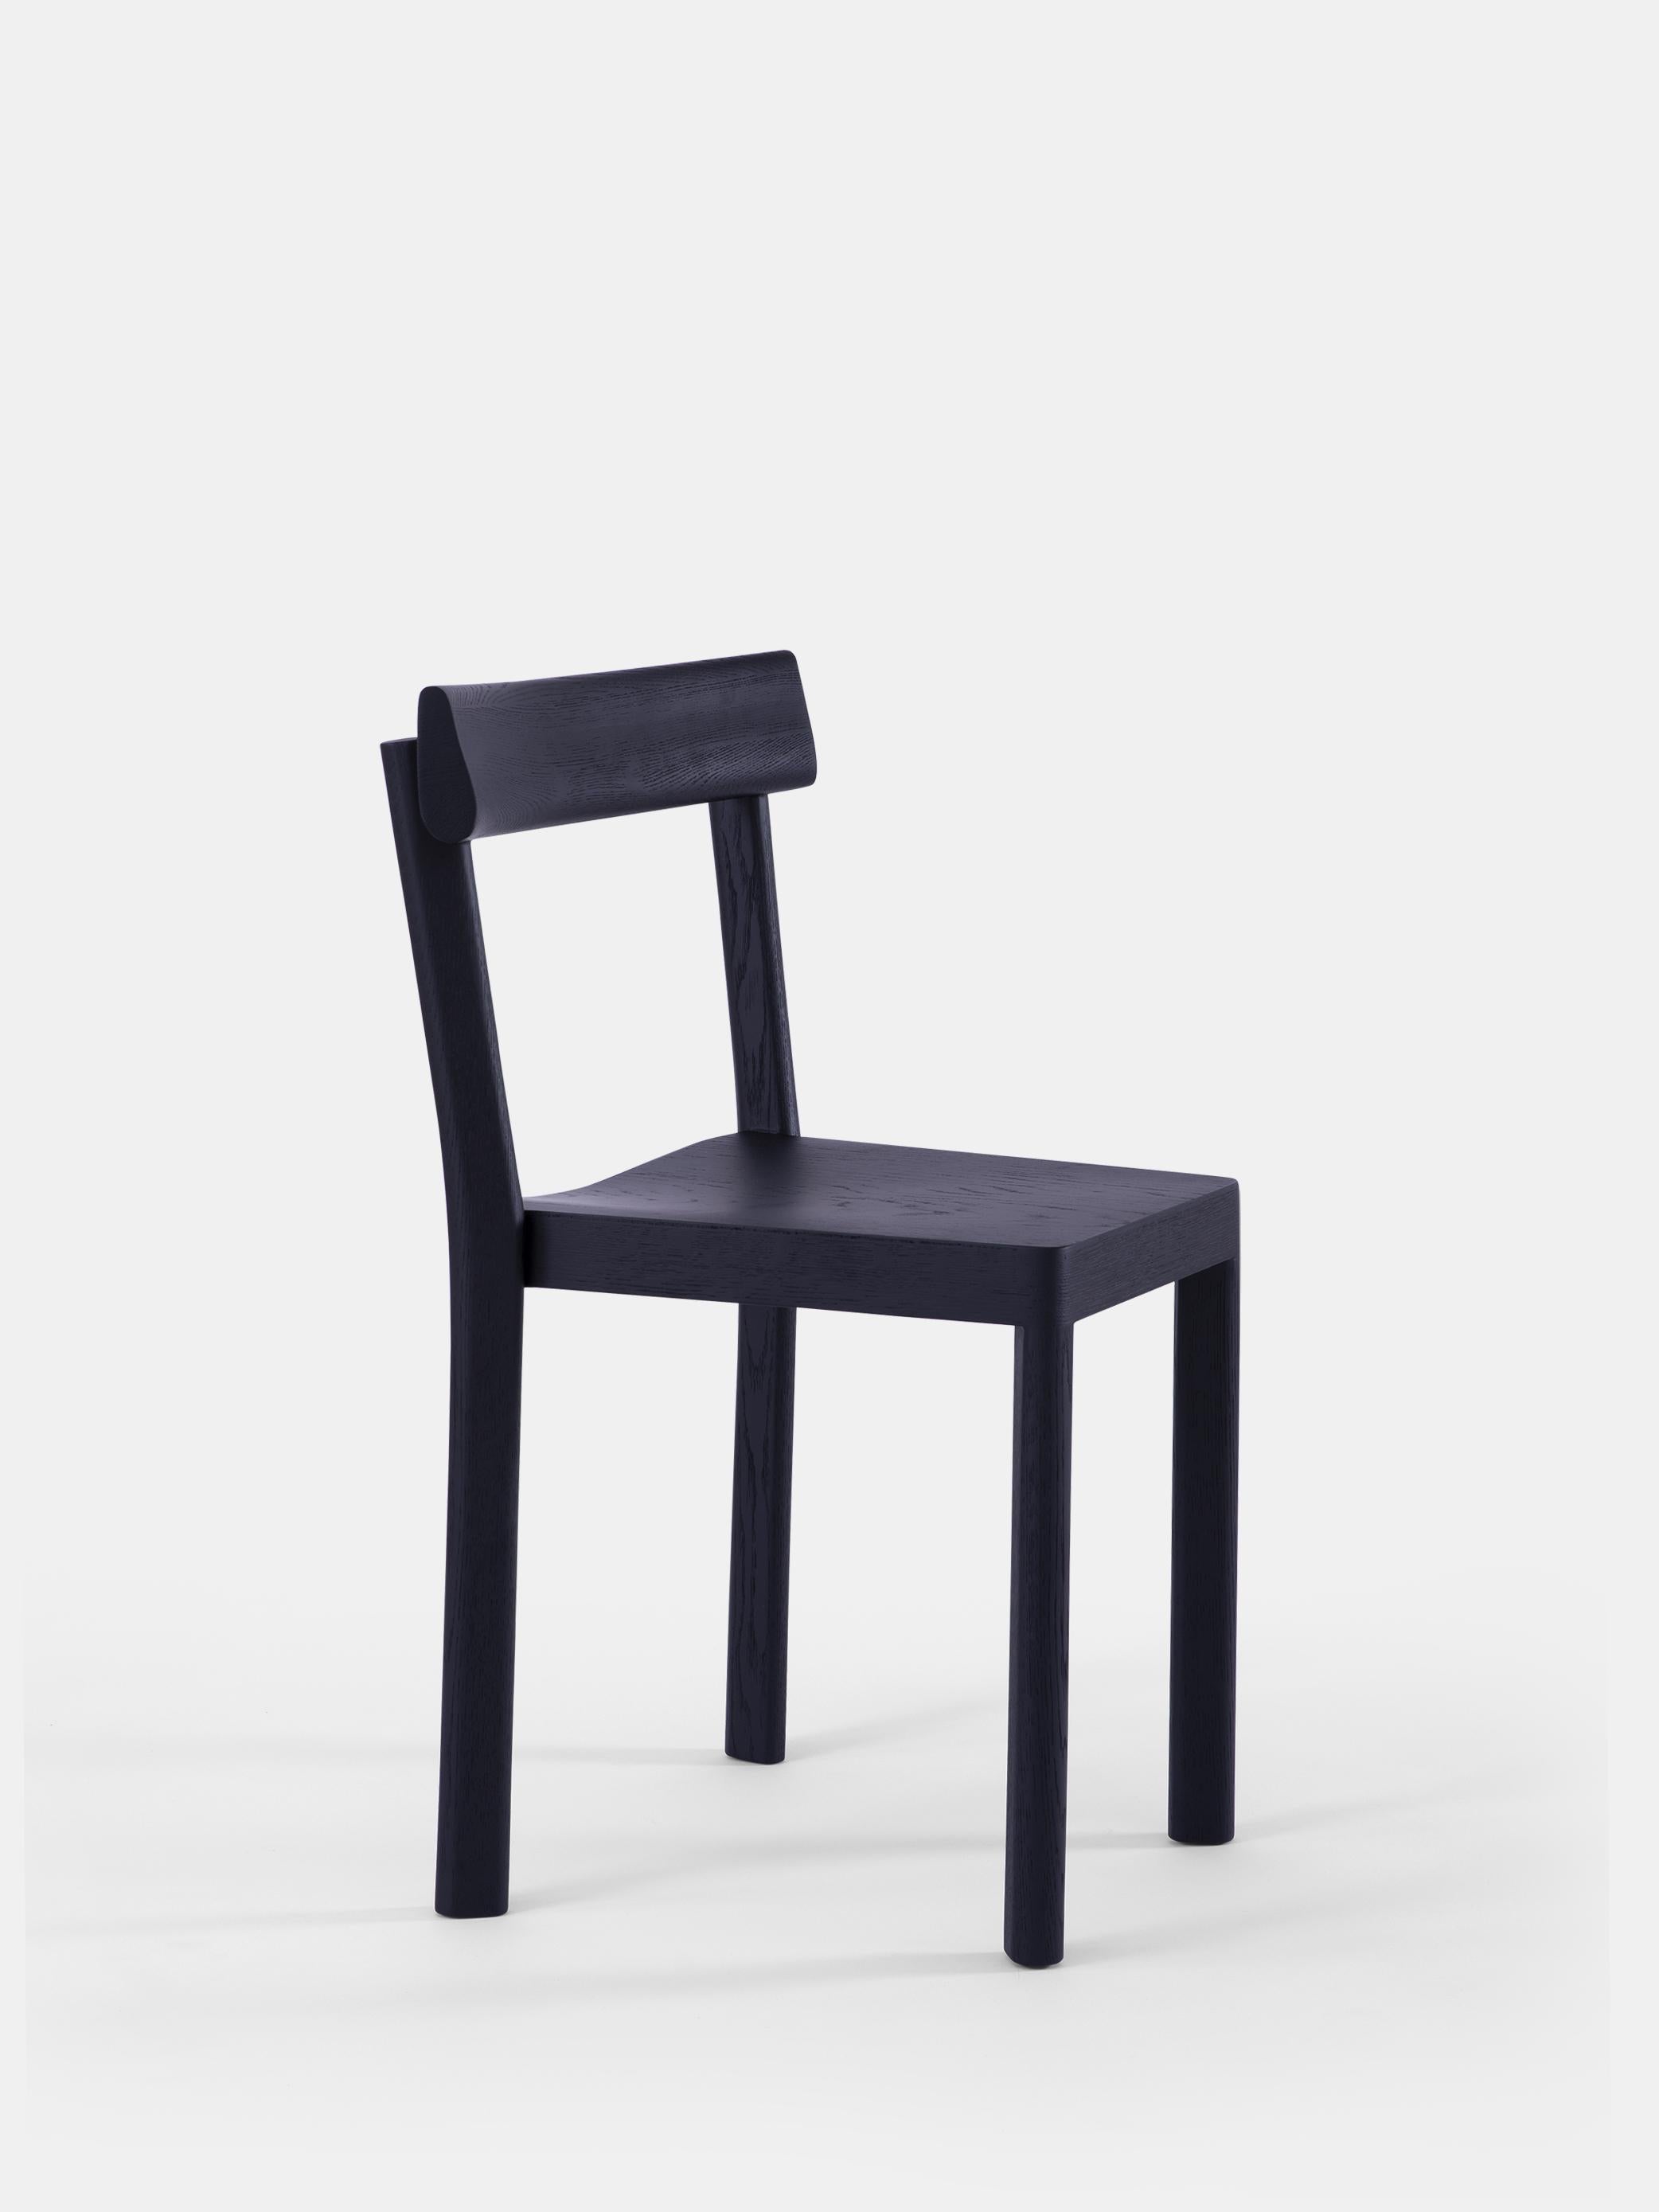 Lot de 6 chaises Galta en chêne noir par Kann Design
Dimensions : D 43 x L 51 x H 80 cm.
MATERIAL : Chêne laqué noir.
Disponible dans d'autres finitions.

Avec la Galta, SCMP Design/One repense la chaise de bistrot classique. Le résultat est